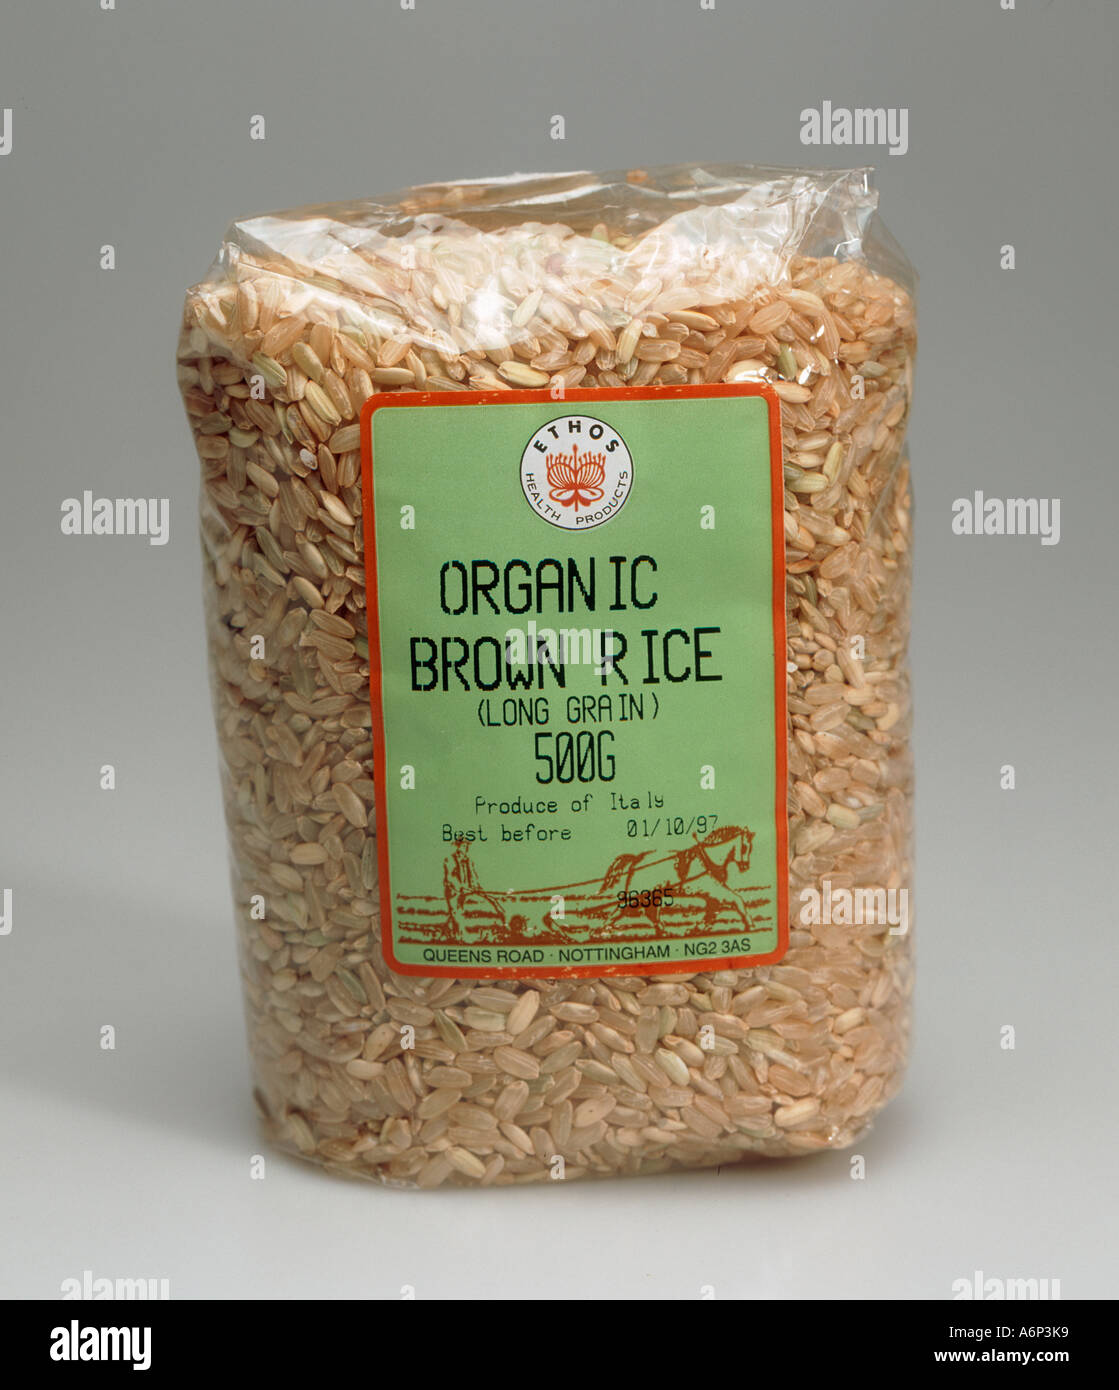 Il pacchetto di italiano cresciuto organica marrone riso a grani lunghi dalla salute di un negozio di alimentari Foto Stock